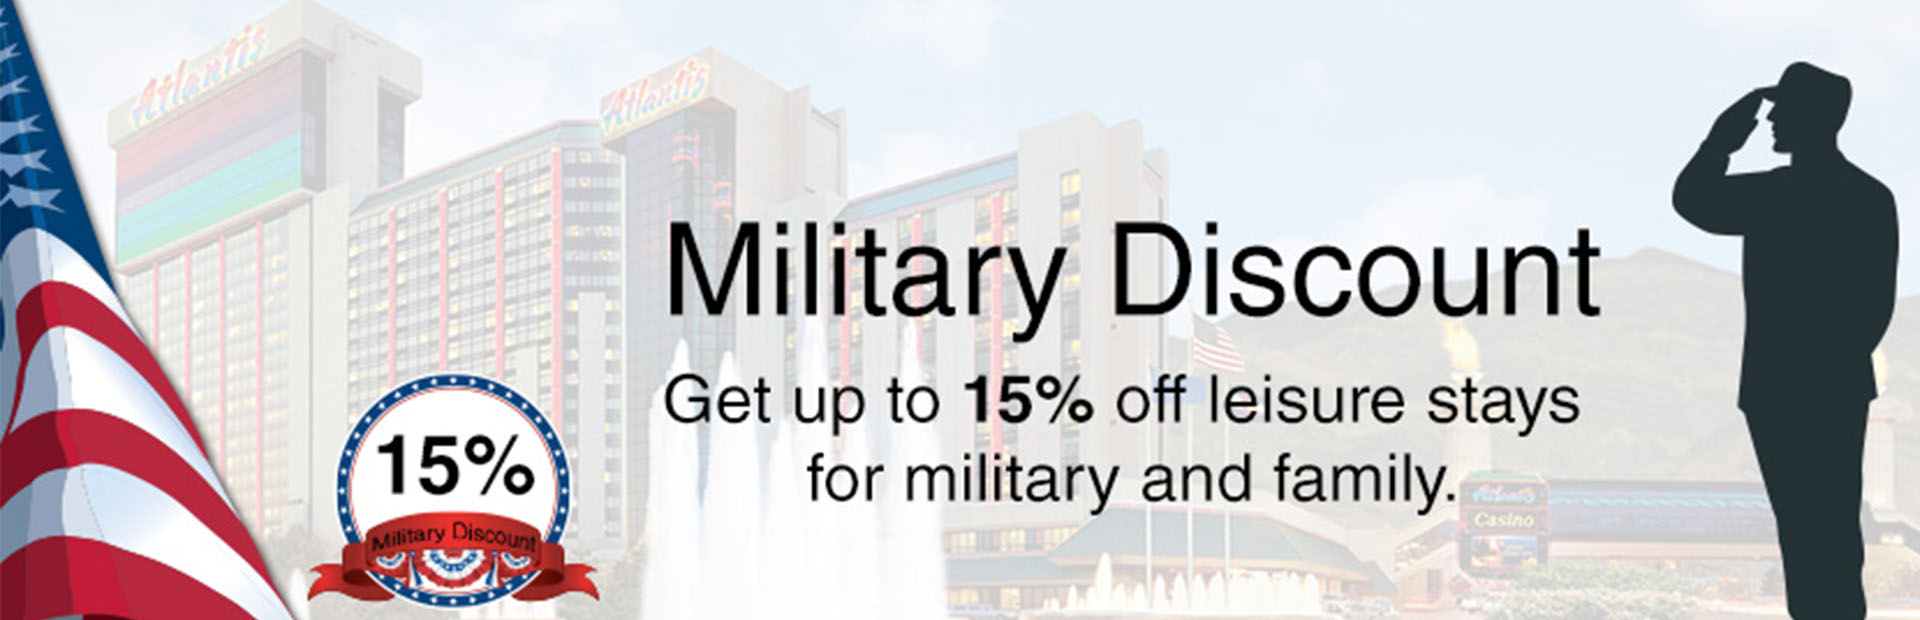 Military Discount at Atlantis